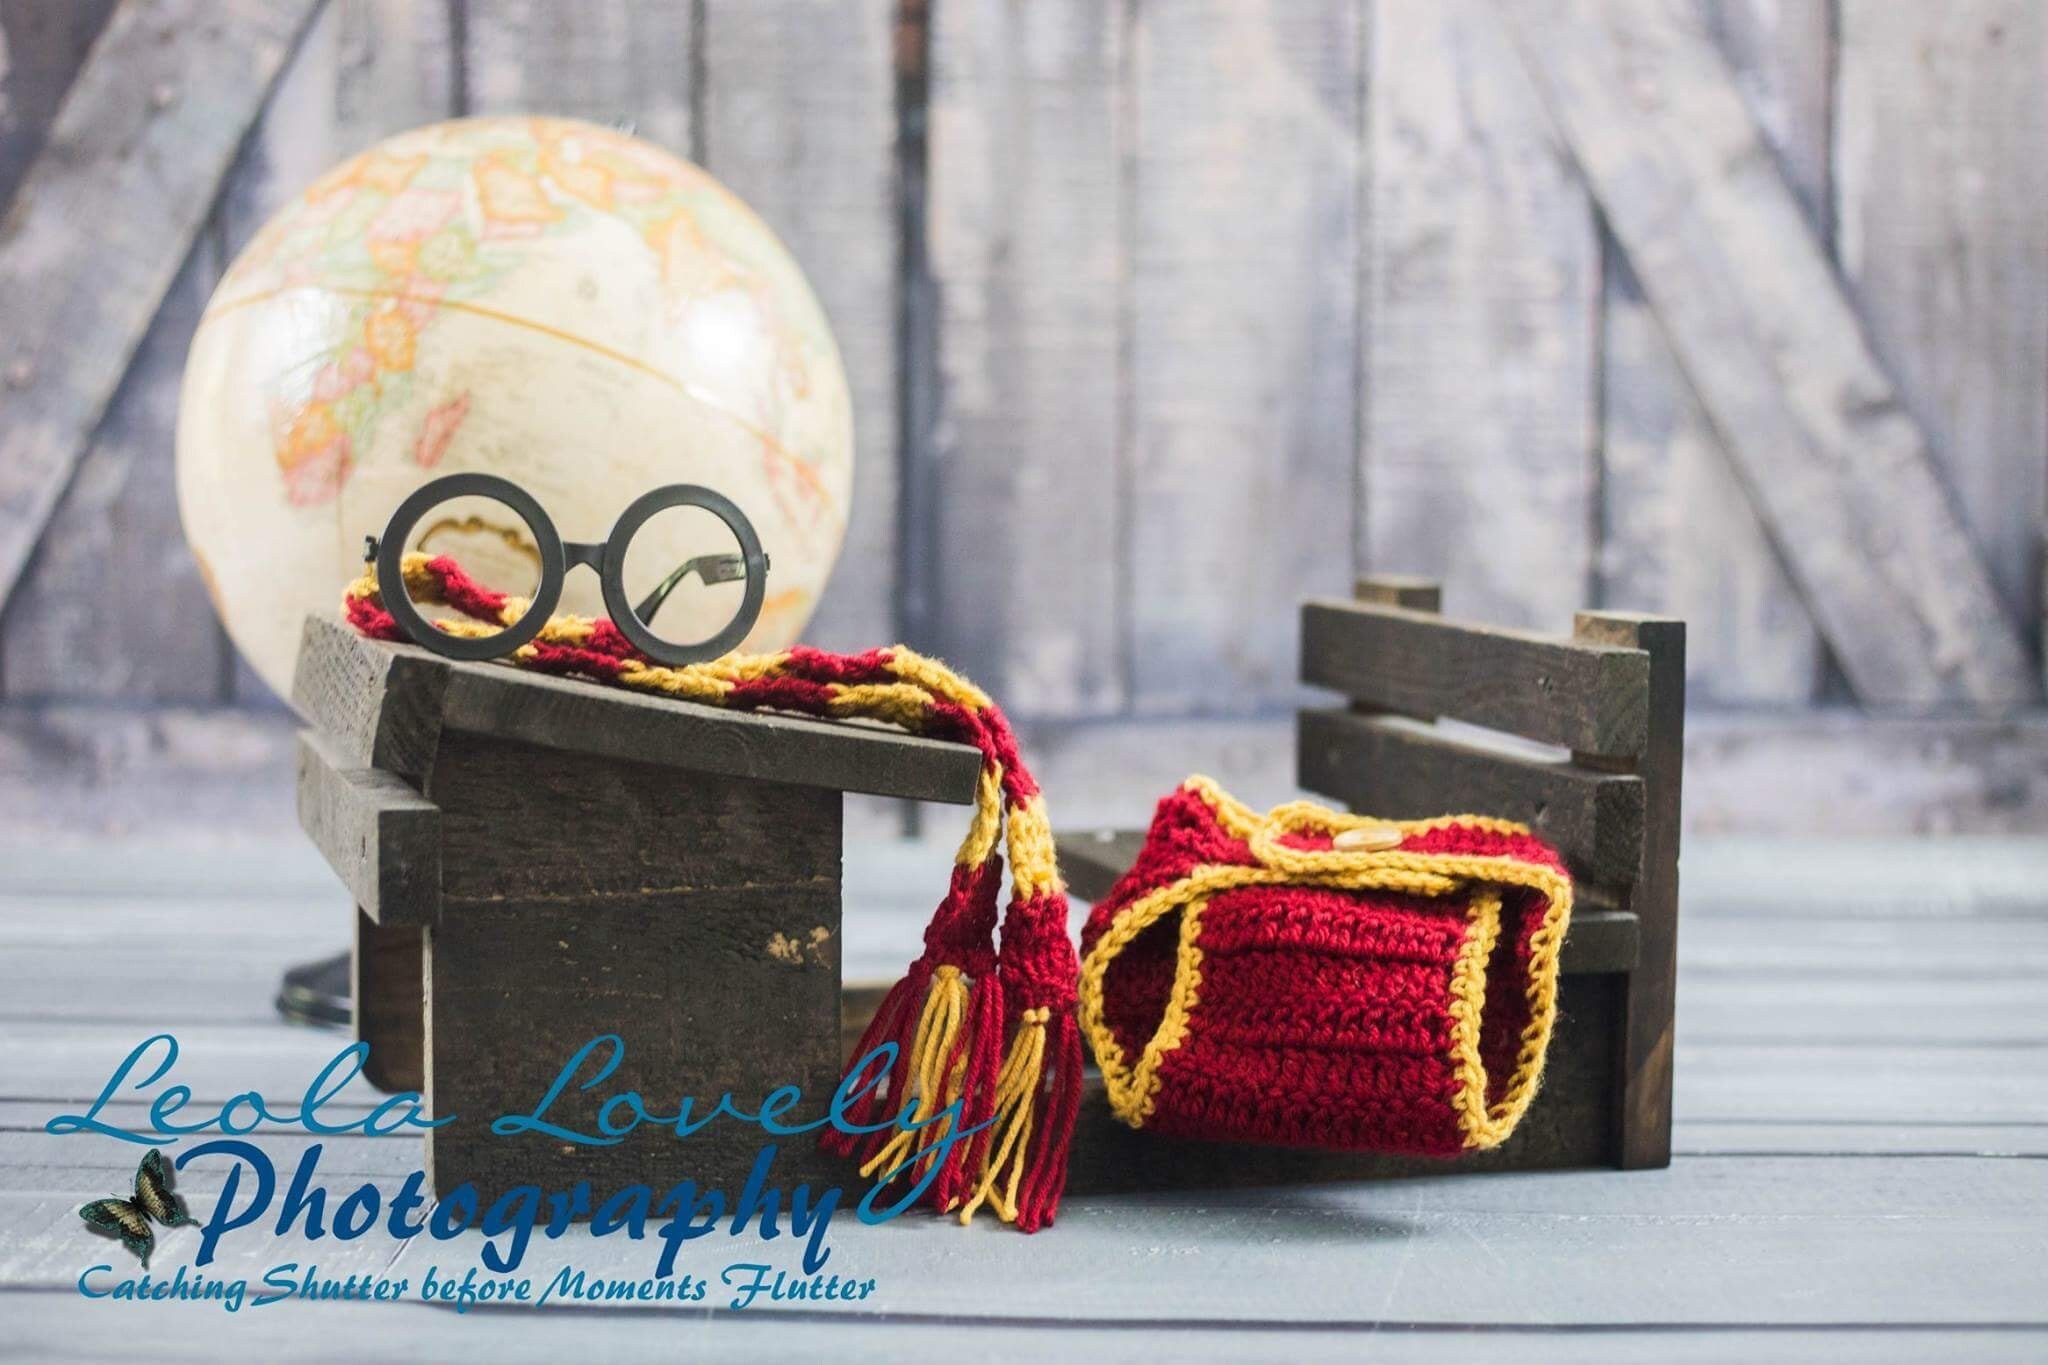 Set Harry Potter Crochet Bebé